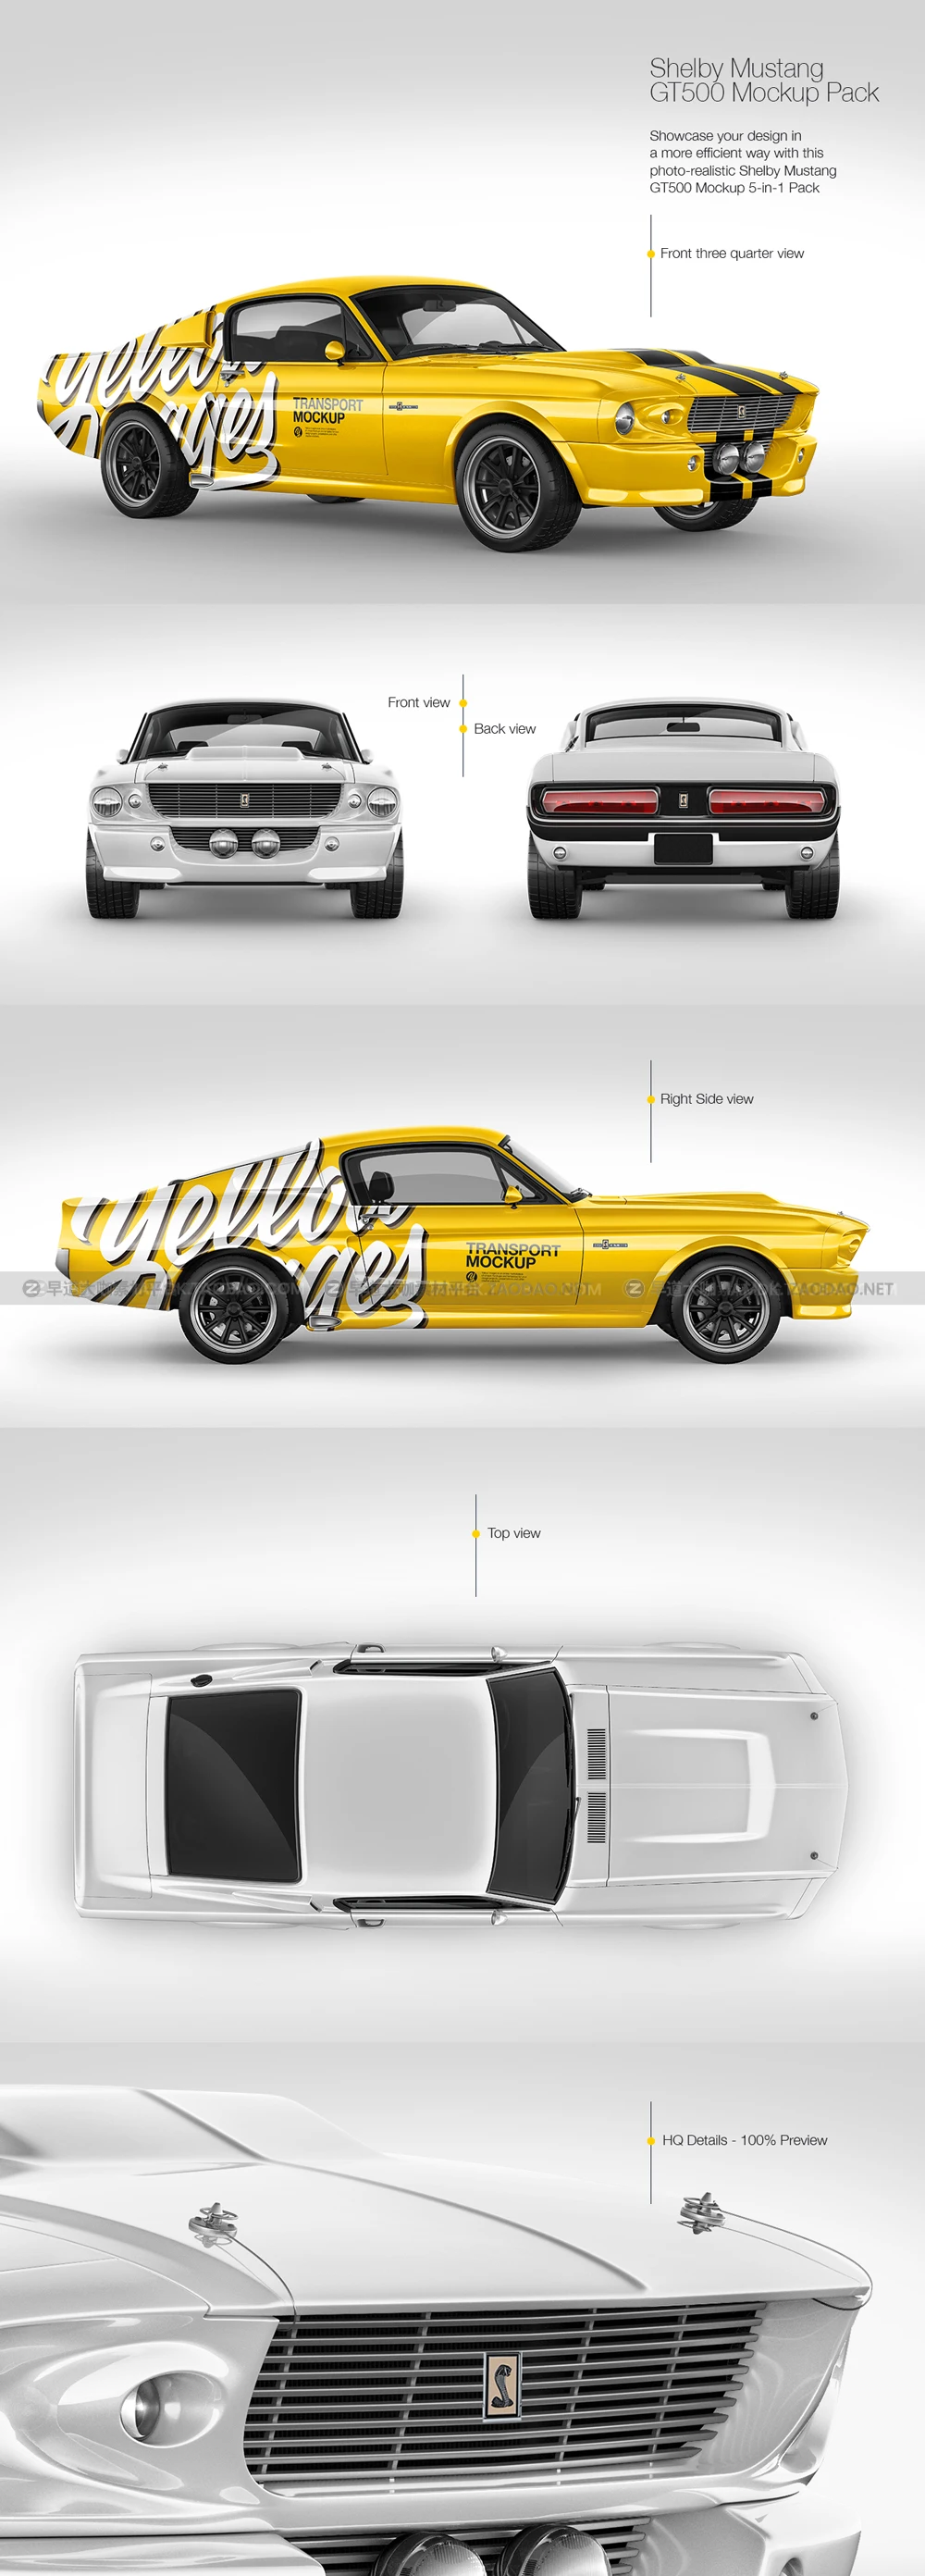 野马GT500美式大马力肌肉车汽车广告贴图ps样机国外设计模板 1967 Shelby Mustang GT500 Mockup Pack插图